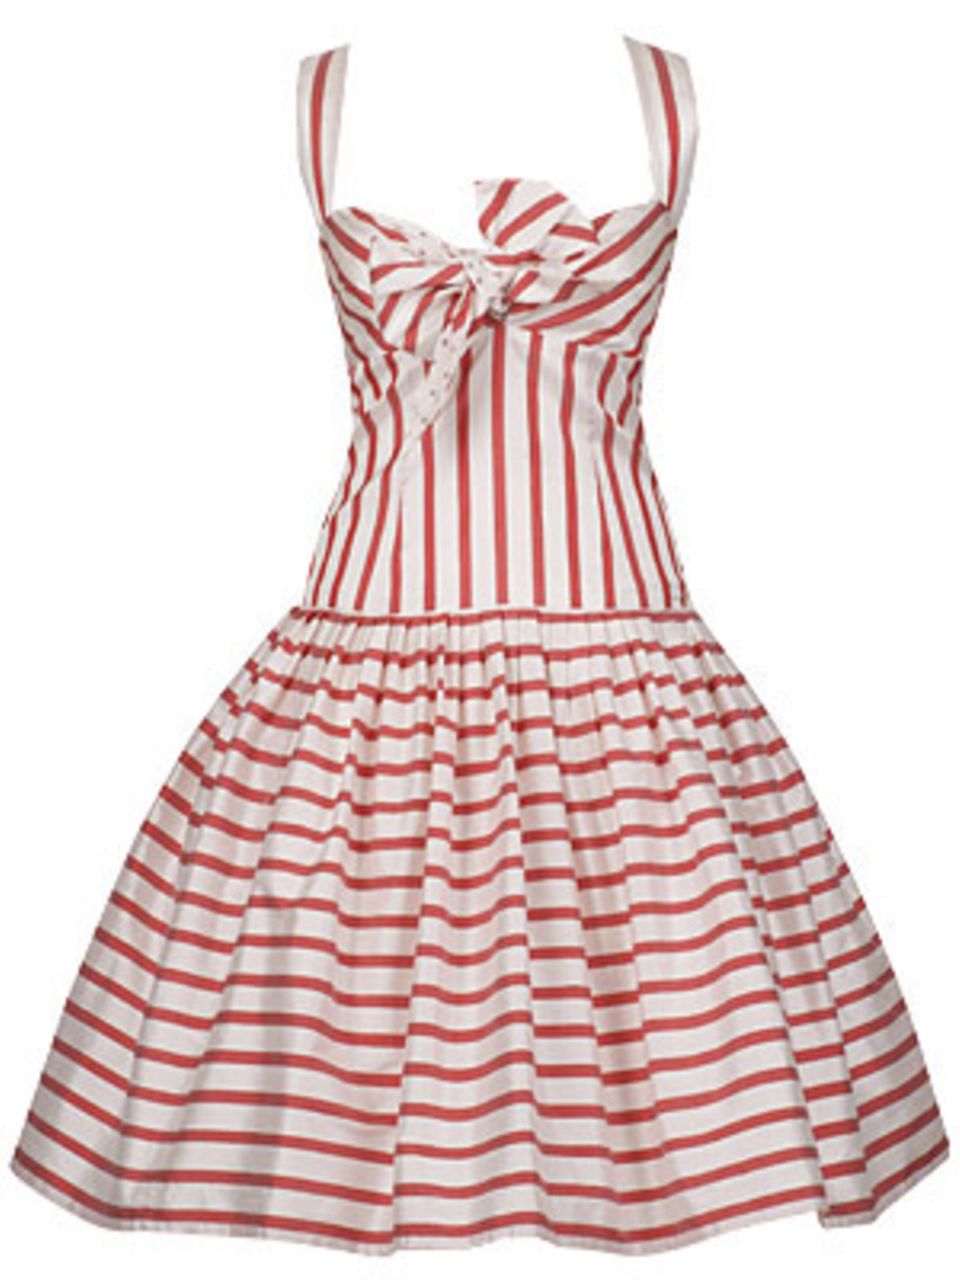 Raffiniertes Streifen-Kleid in A-Linie mit Unterrock und Schleife von Lena Hoschek, um 400 Euro.